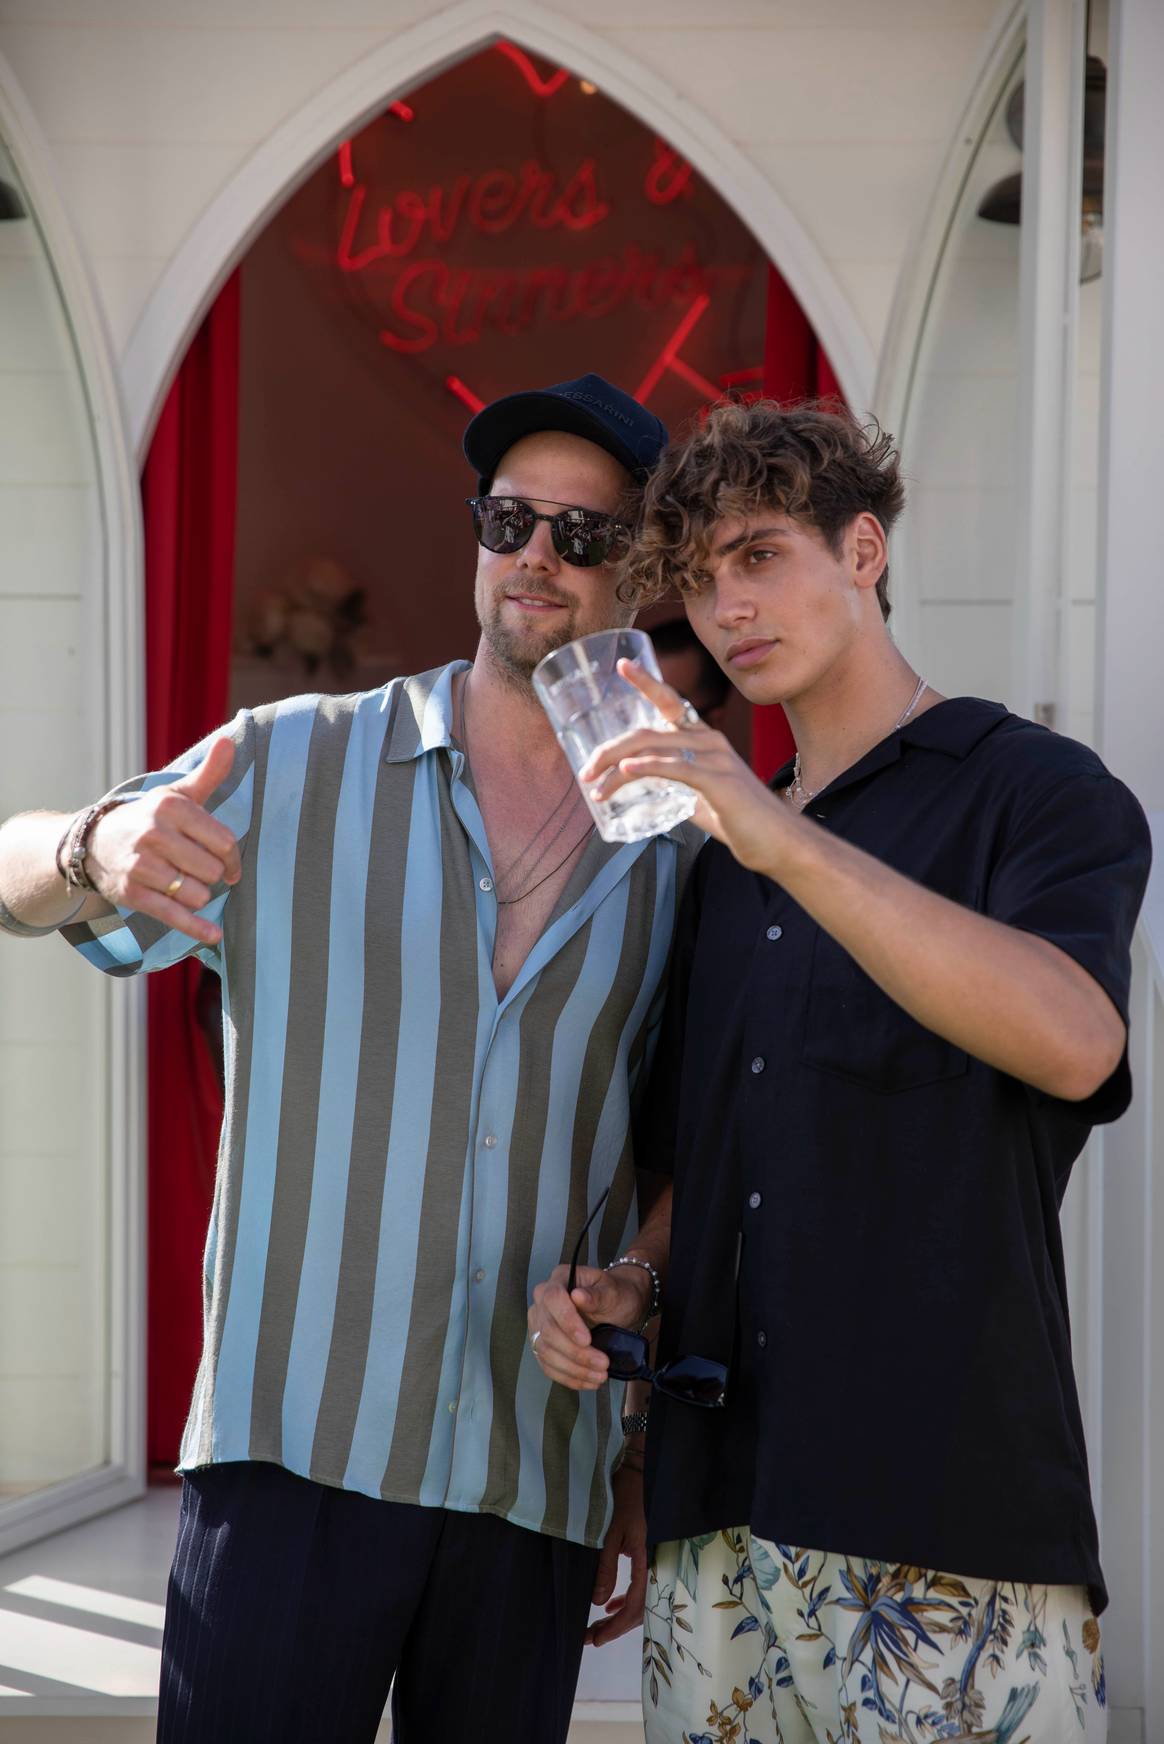 Florian Wortmann (links) met influencer Bene Schulz (rechts) bij het event op Ibiza. Beeld: Baldessarini